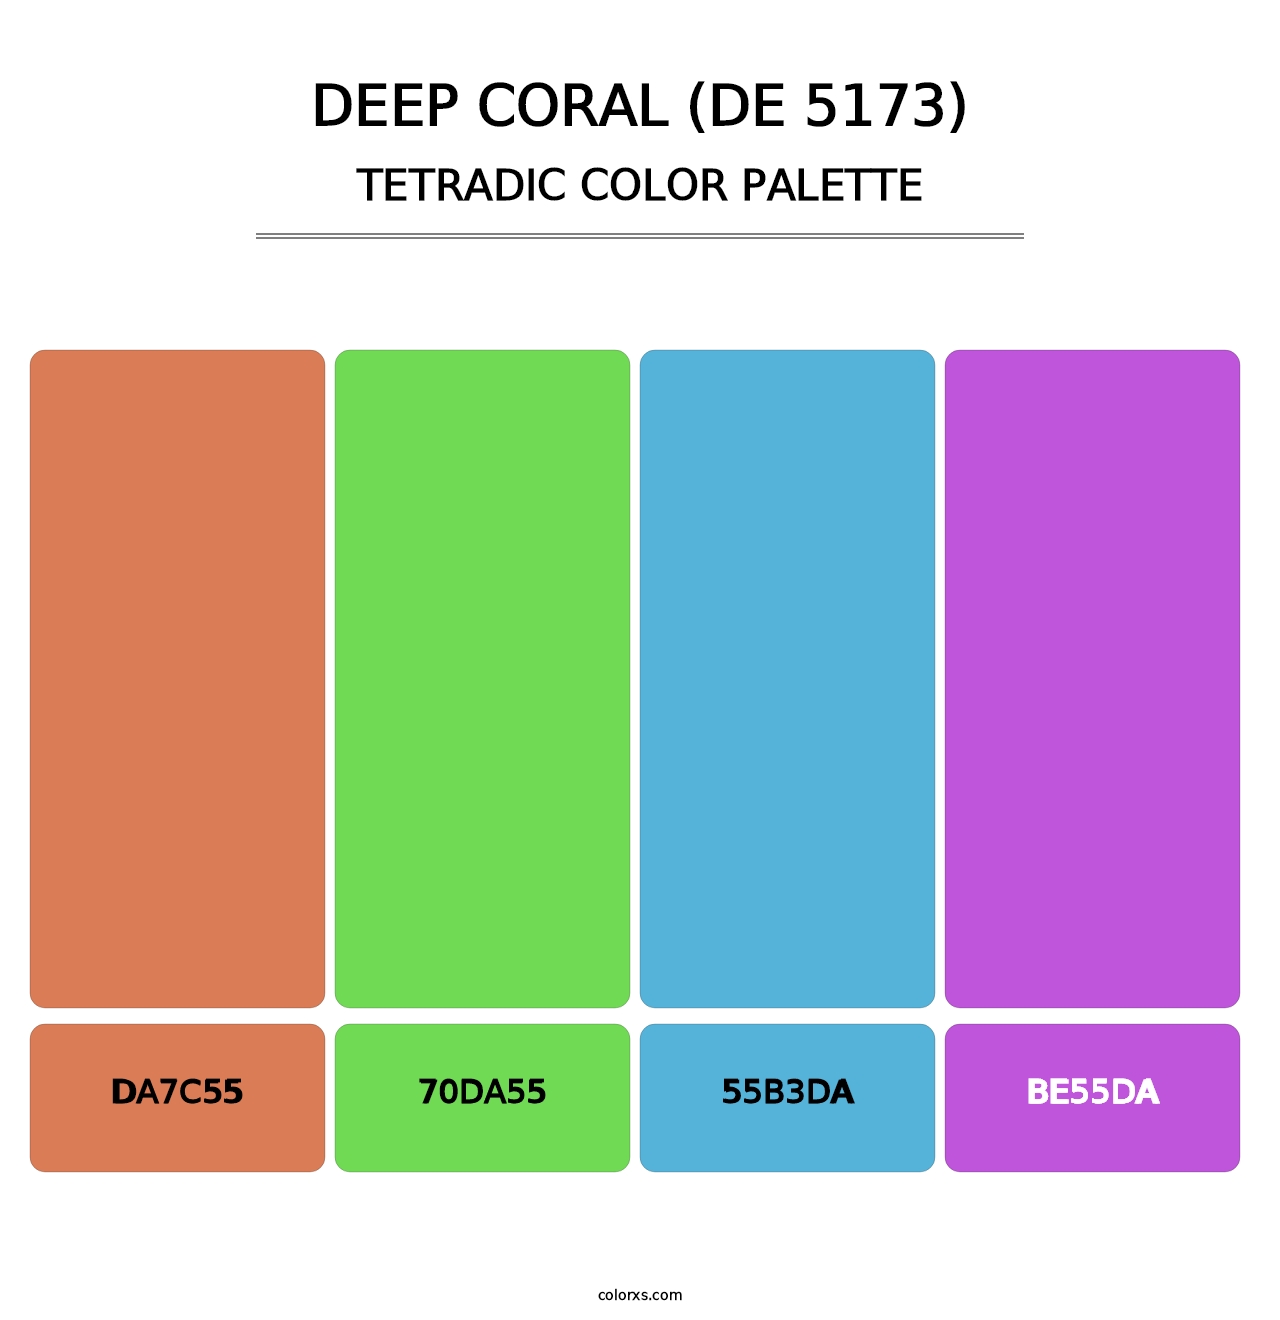 Deep Coral (DE 5173) - Tetradic Color Palette